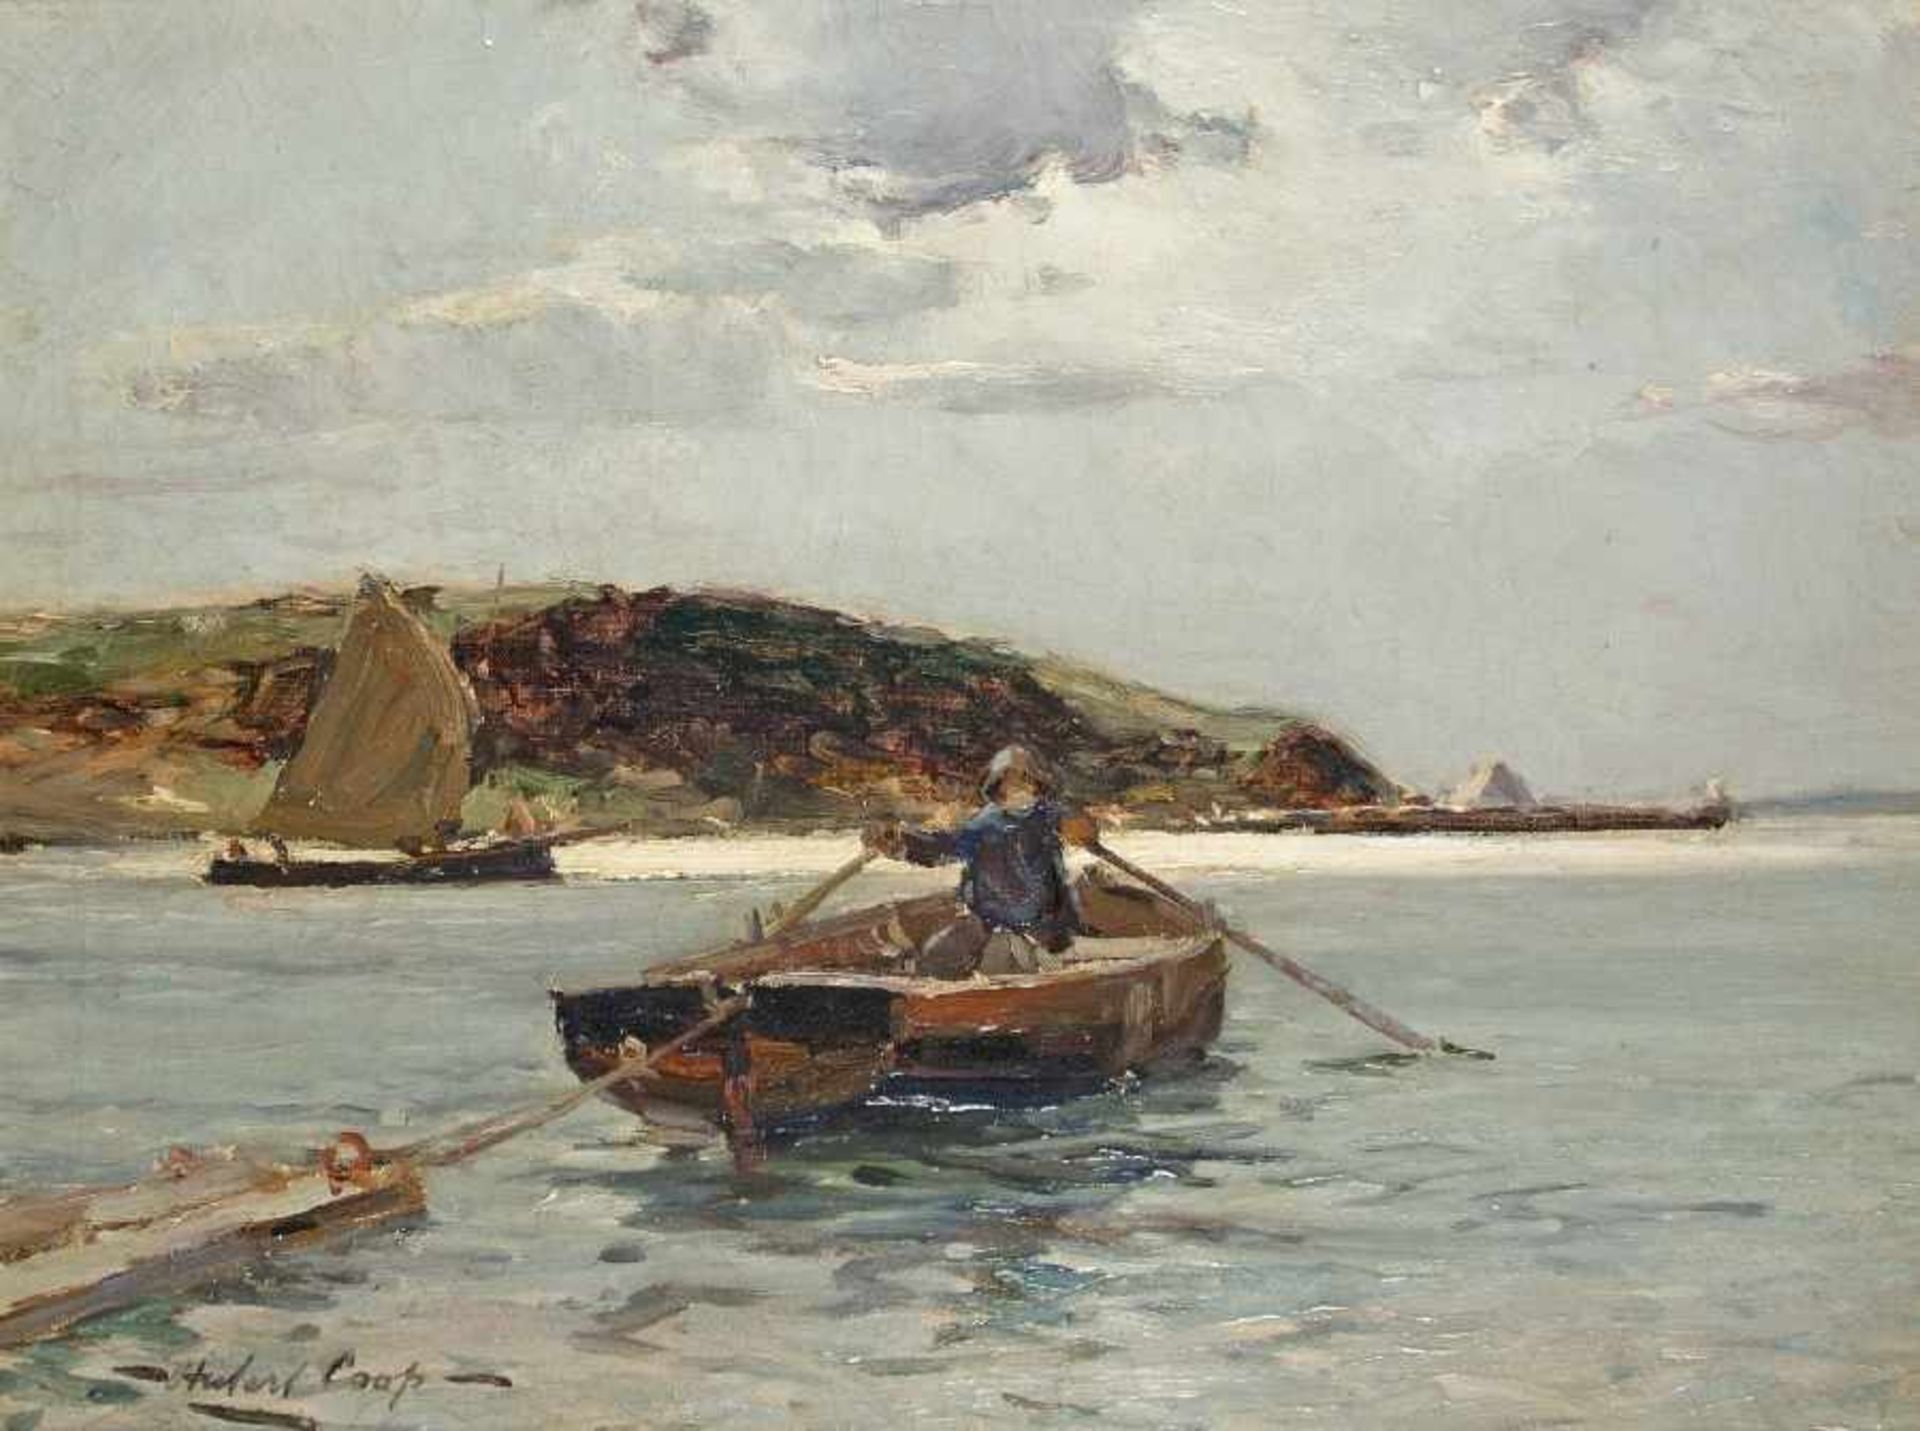 Herbert Cooß Maler des 19. Jh. Fischerboot vor dem Strand Öl auf Lwd, 1913; H 35,5 cm, B 46,5 cm;